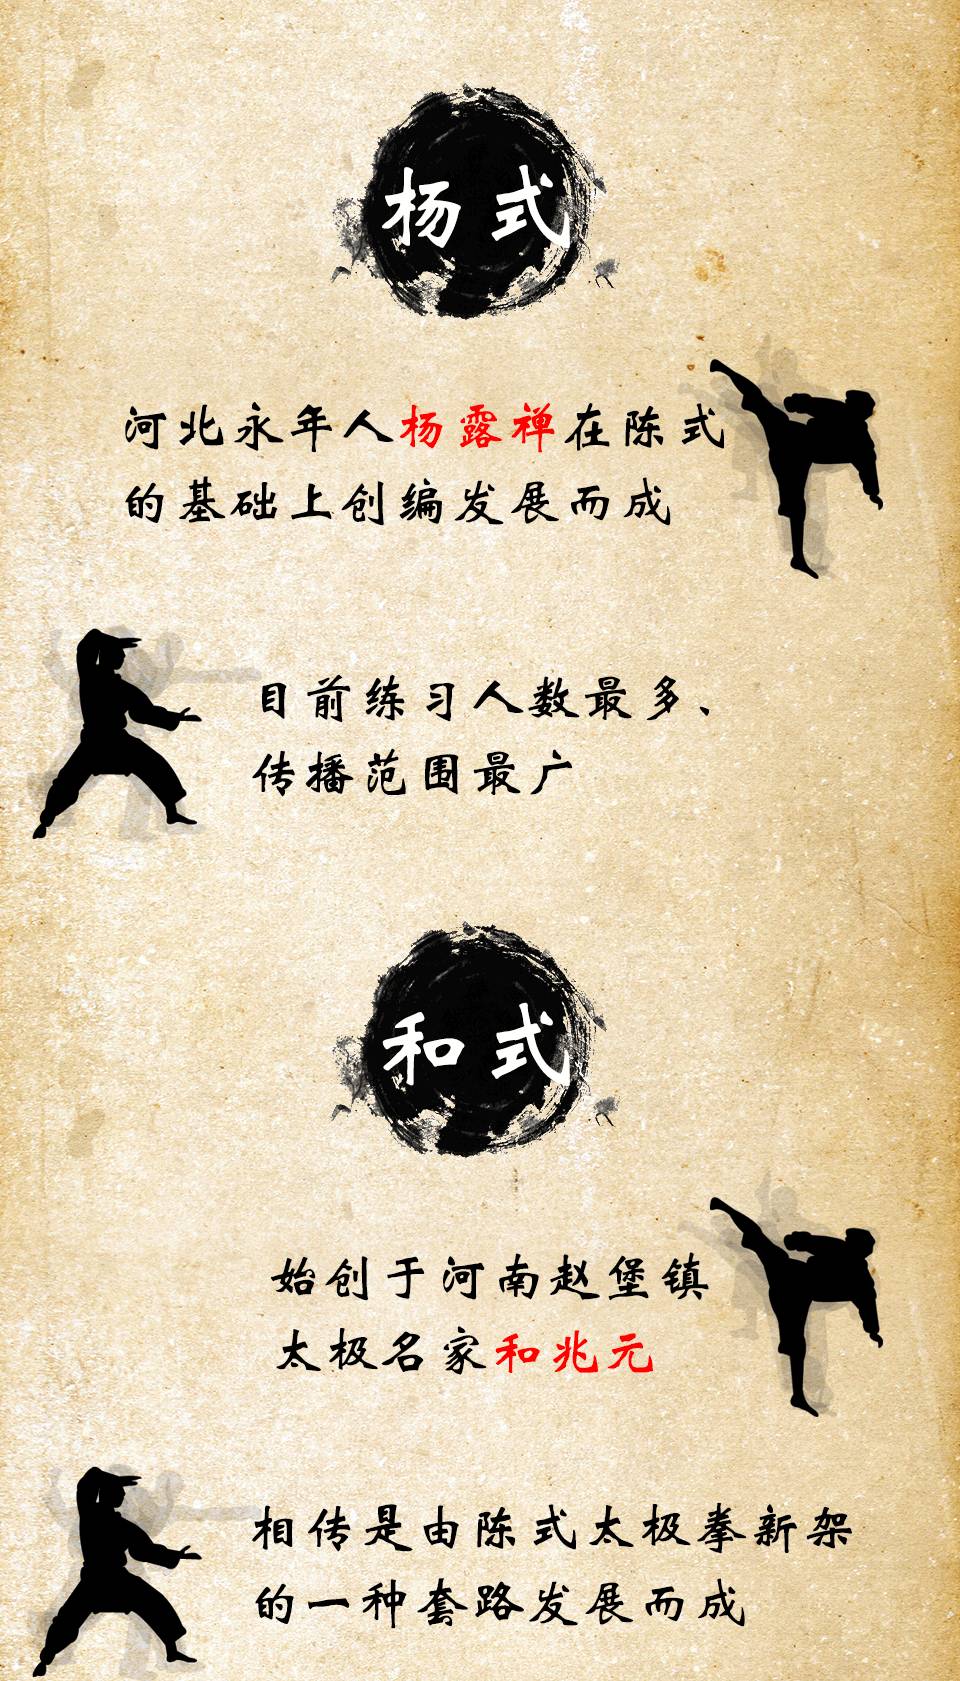 中华武林掀起"血雨腥风,且看现代搏击vs传统武术.